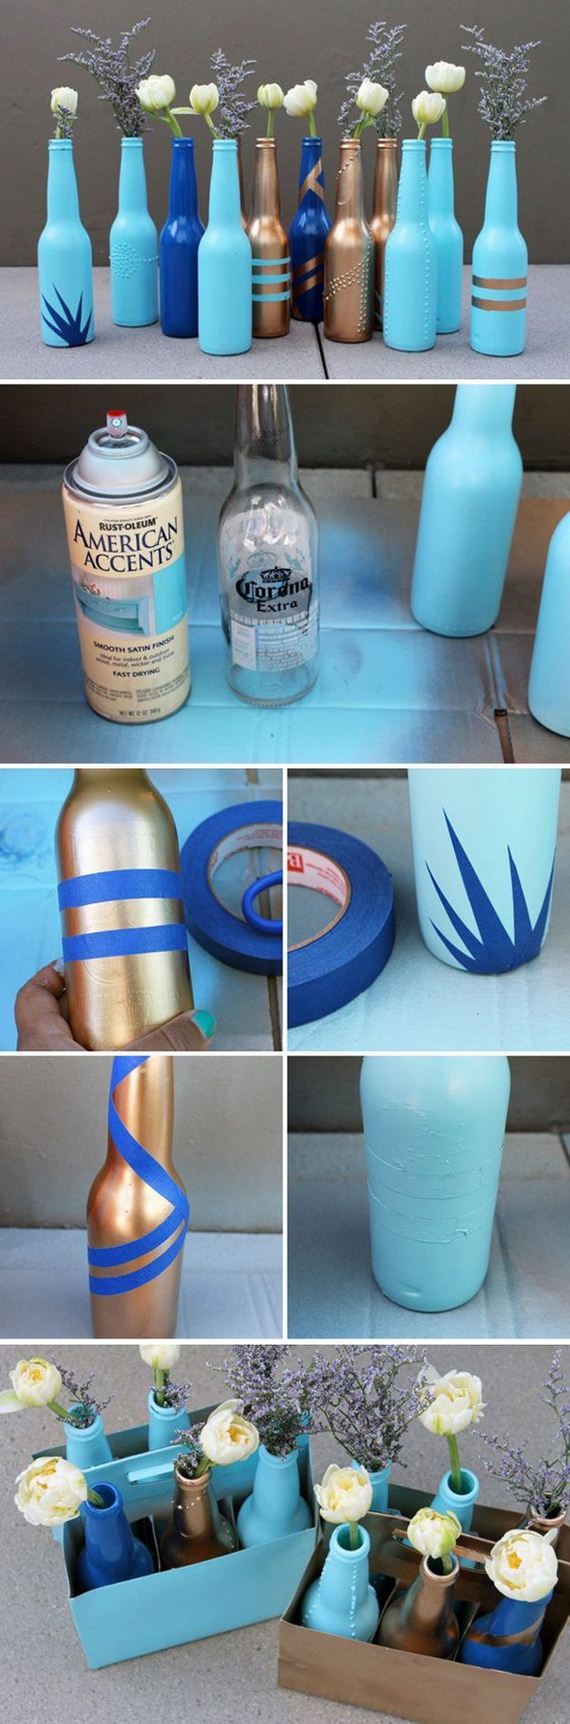 20-spray-paint-ideas